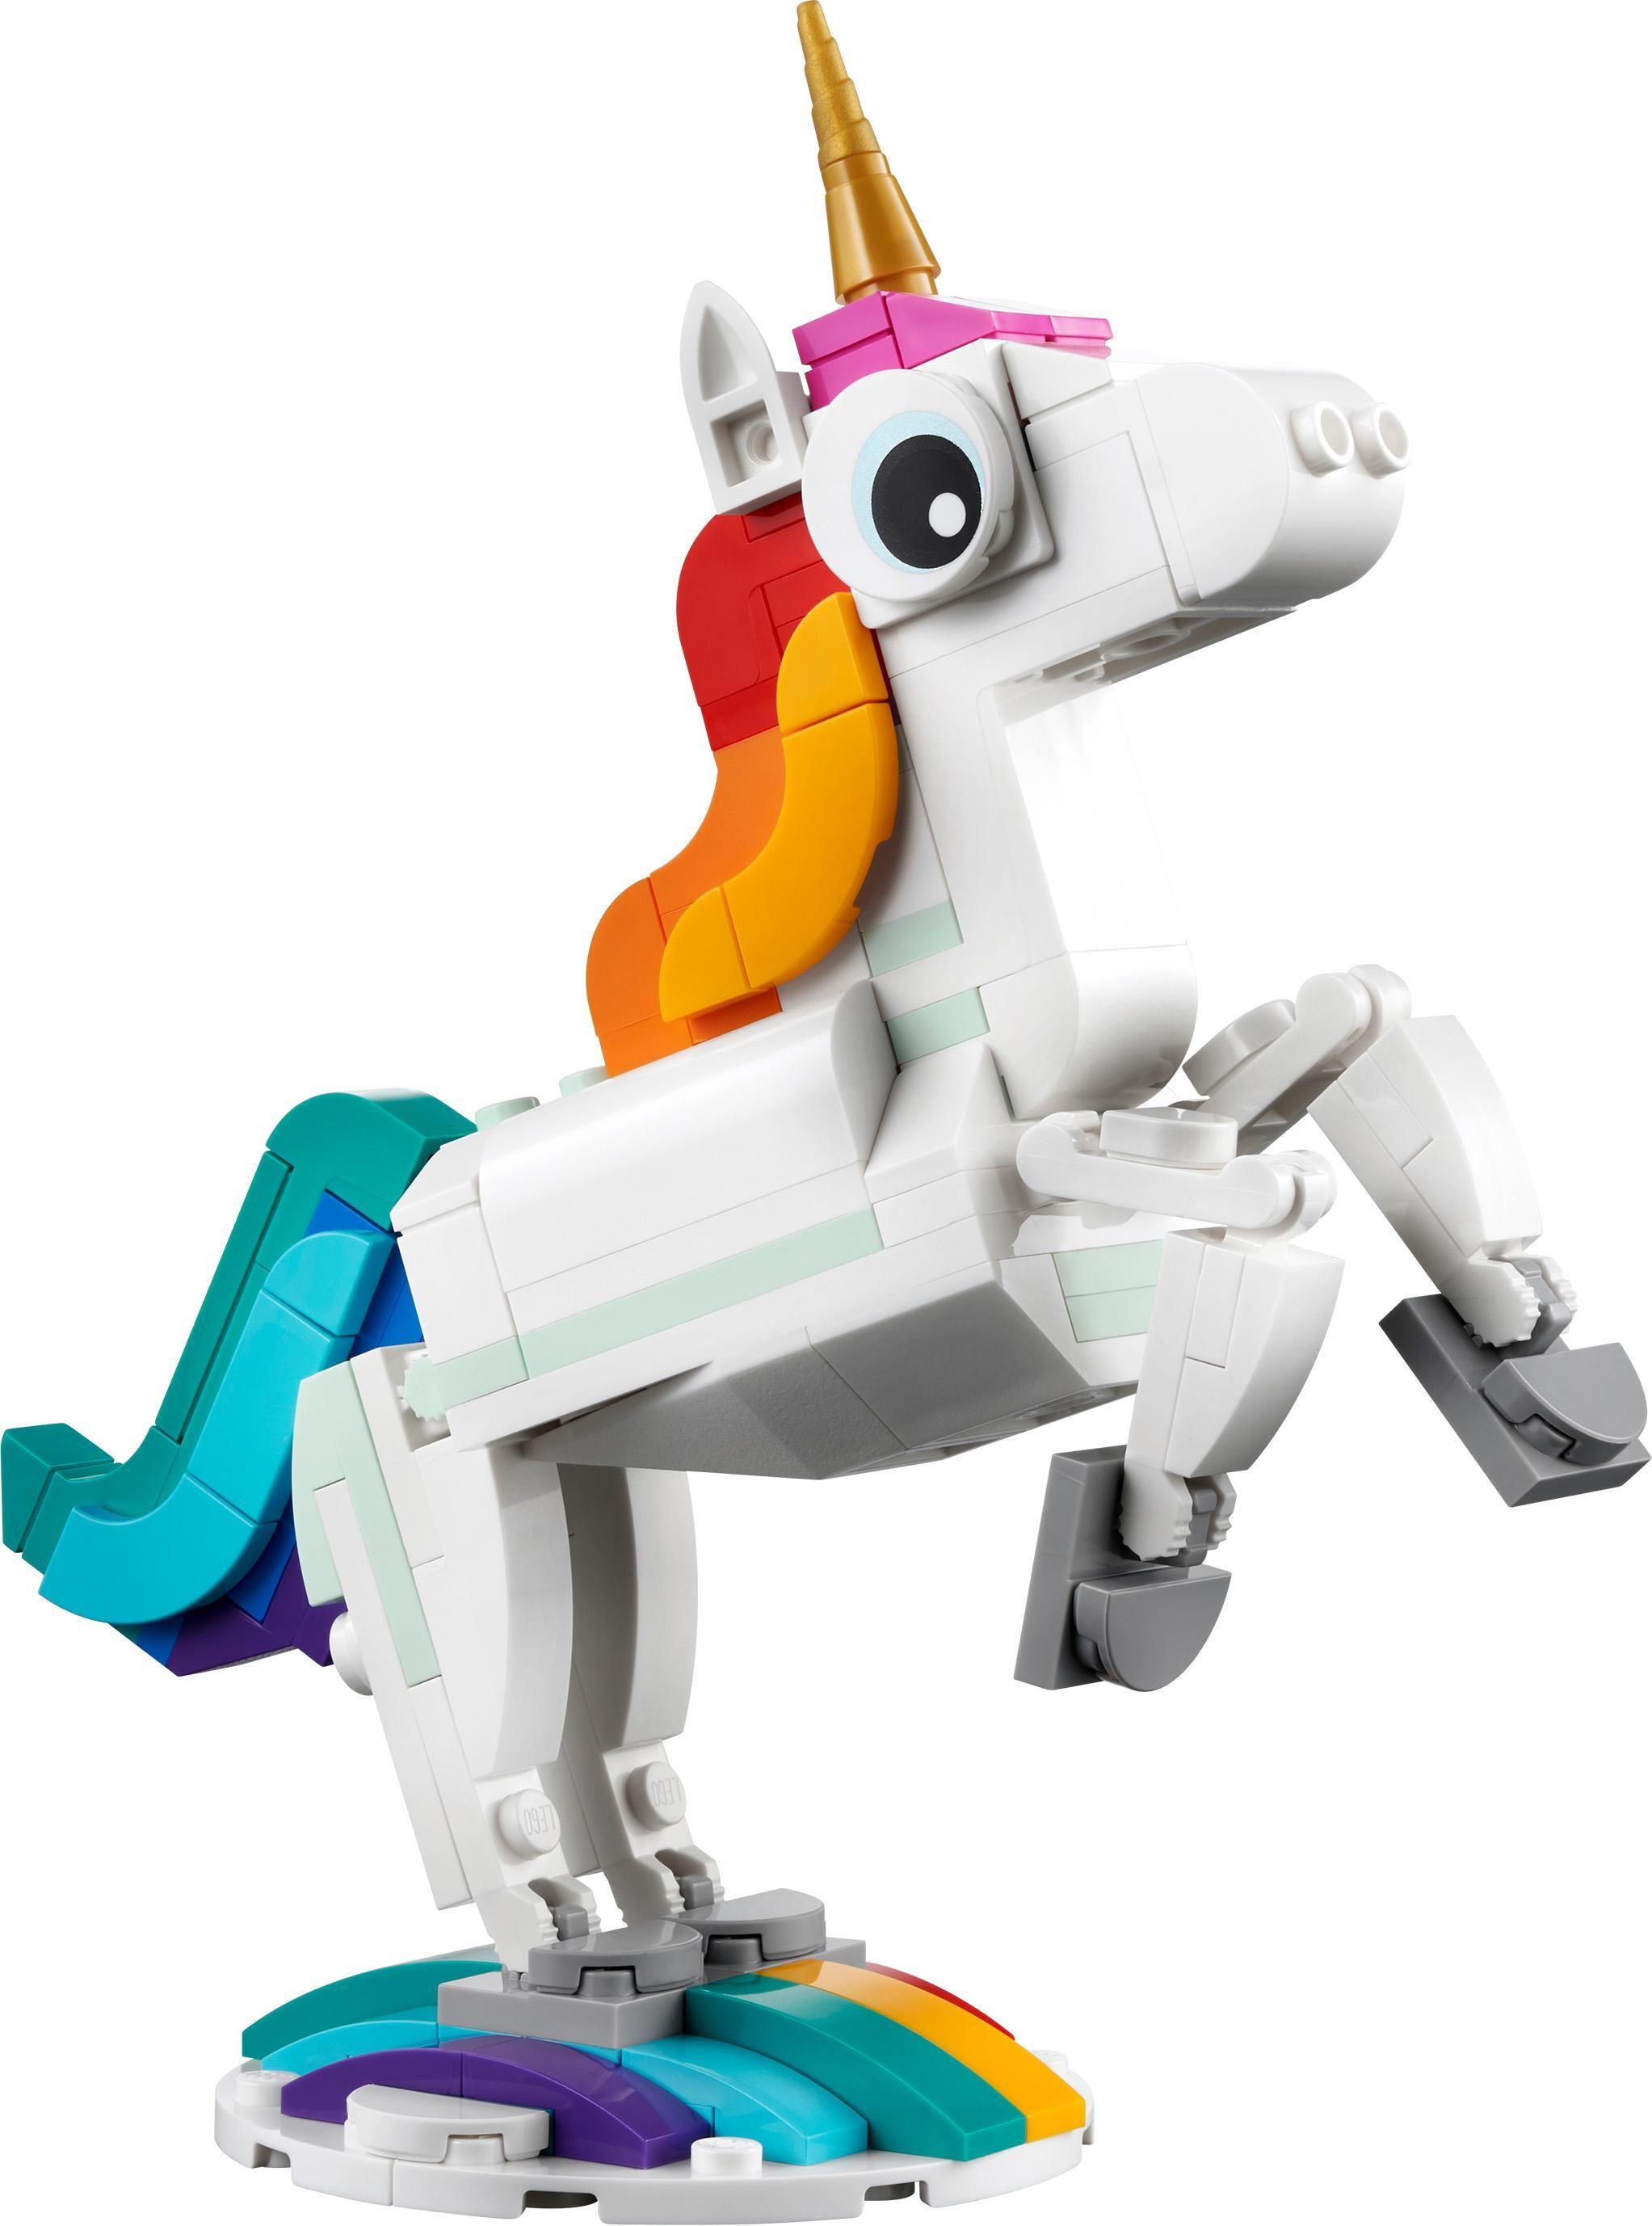 LEGO Ragazza Unicorno (senza accessori)